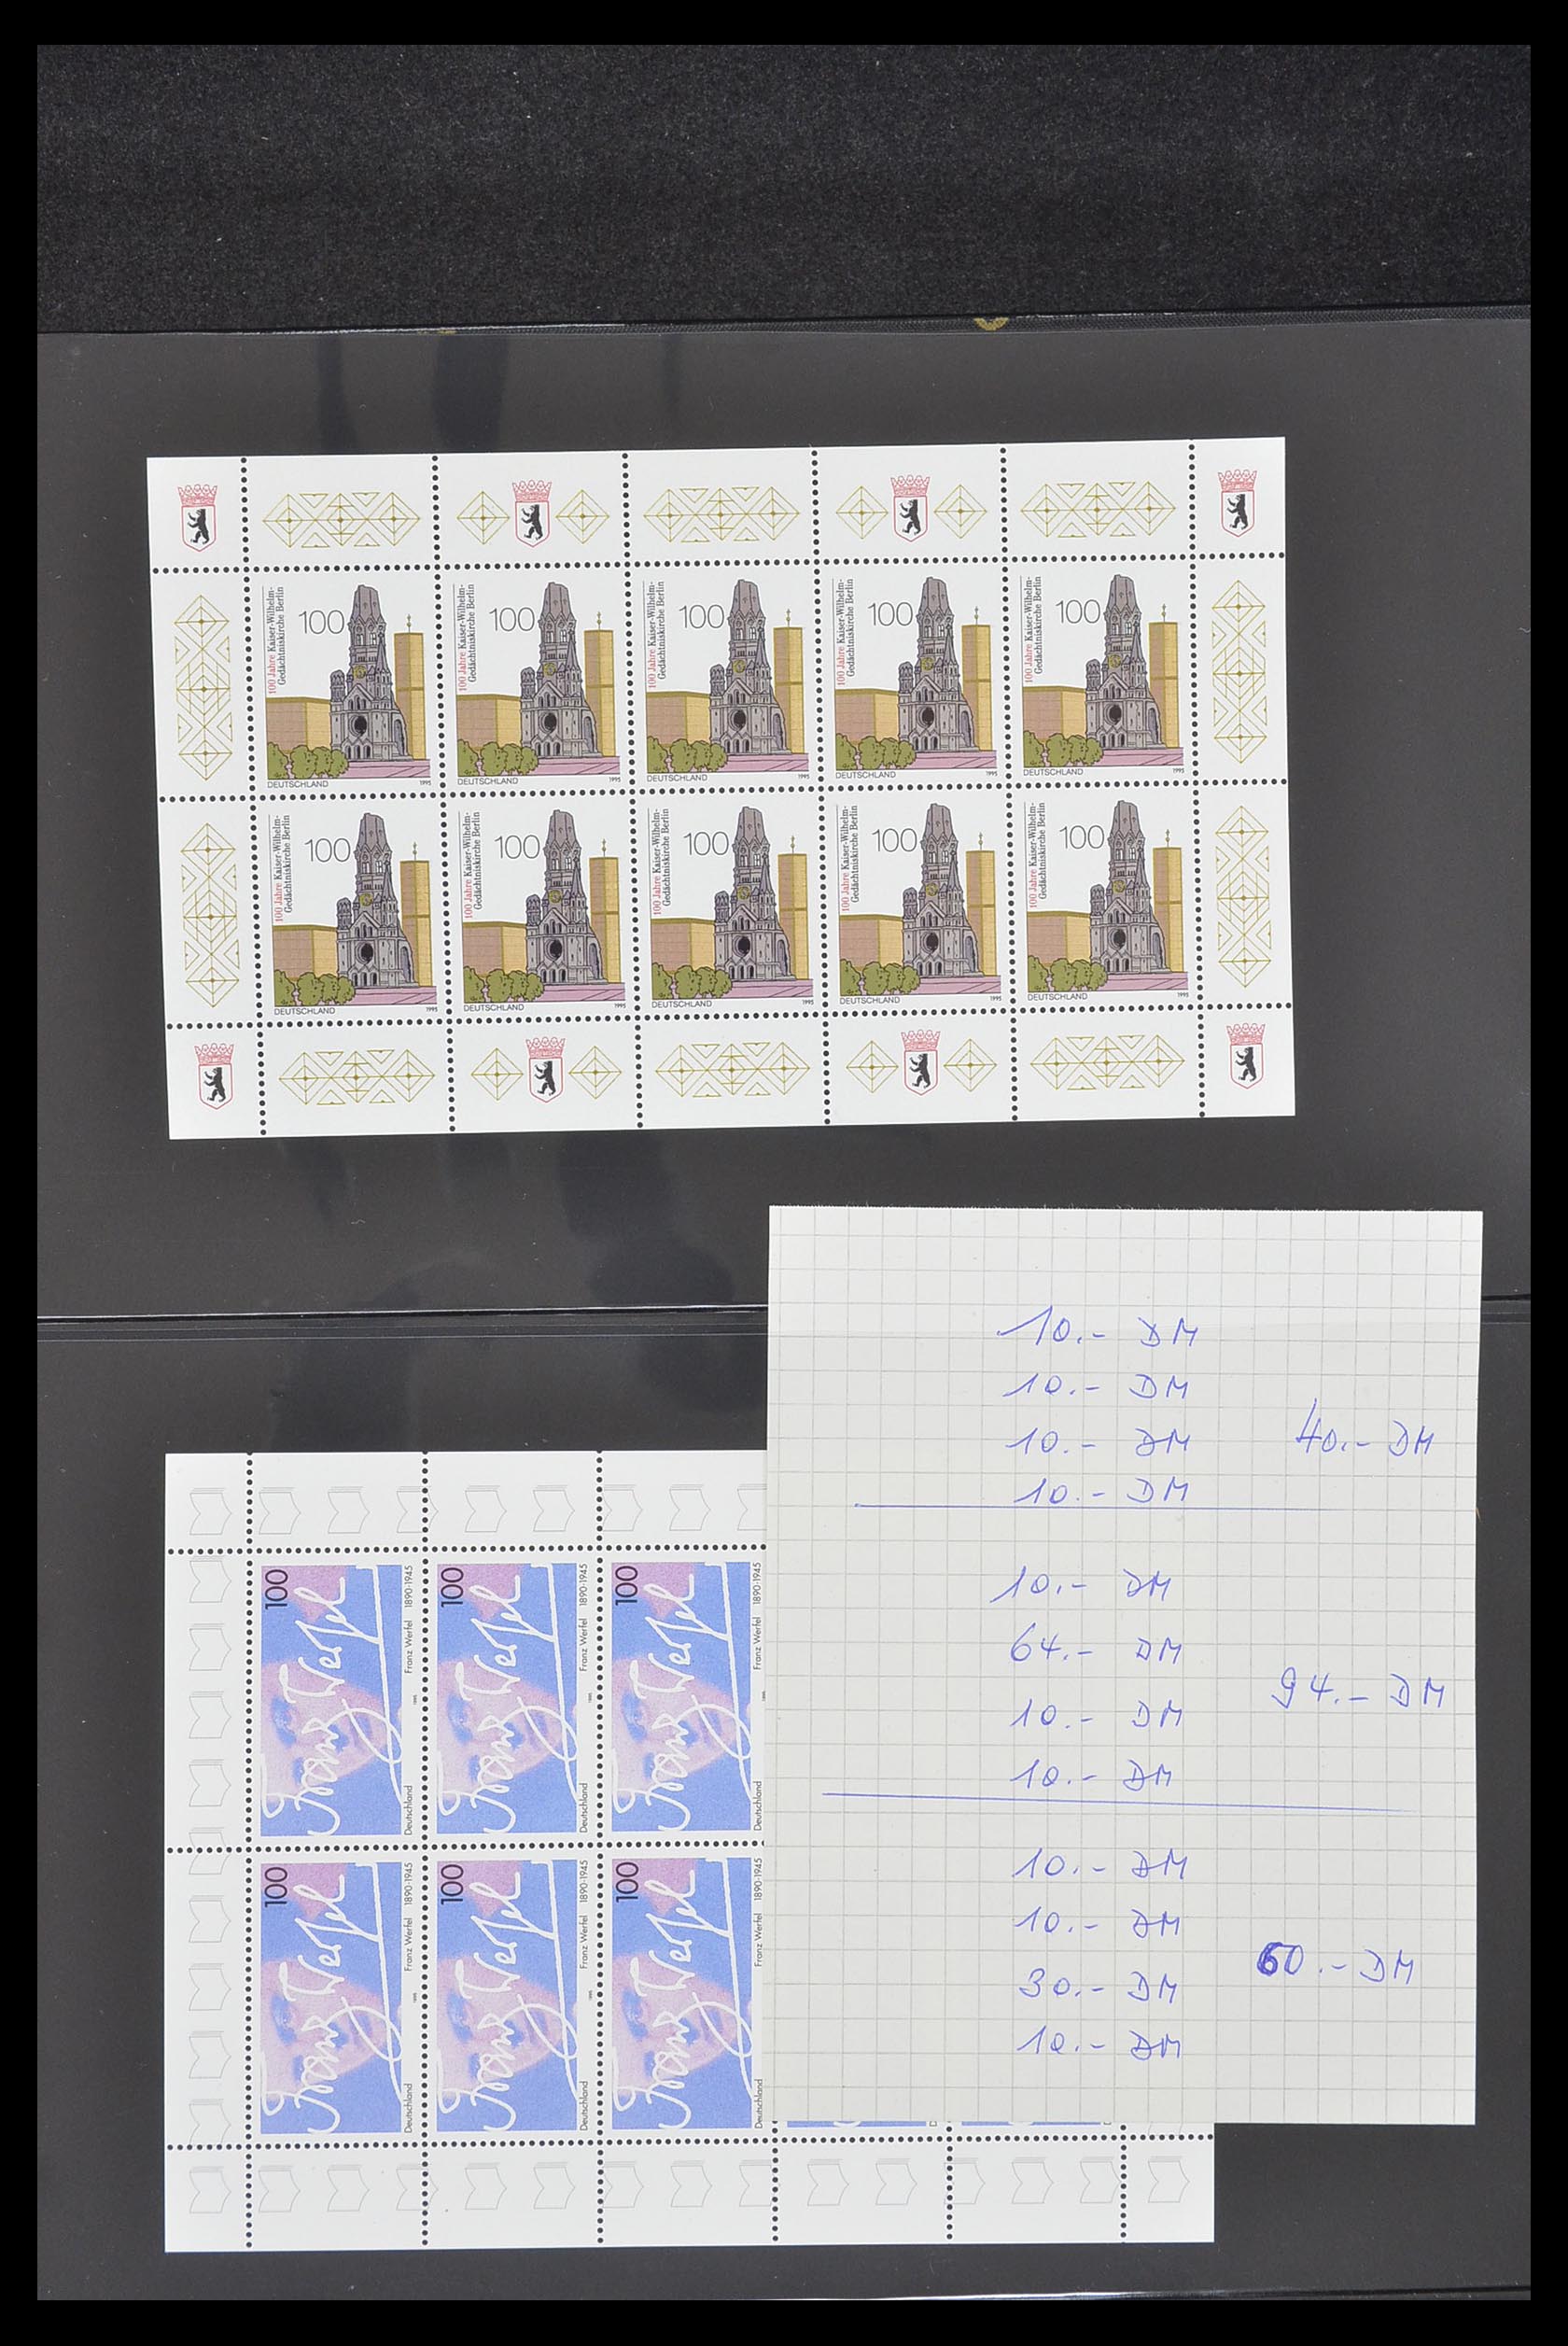 33936 028 - Stamp collection 33936 Bundespost kleinbogen 1994-2000.